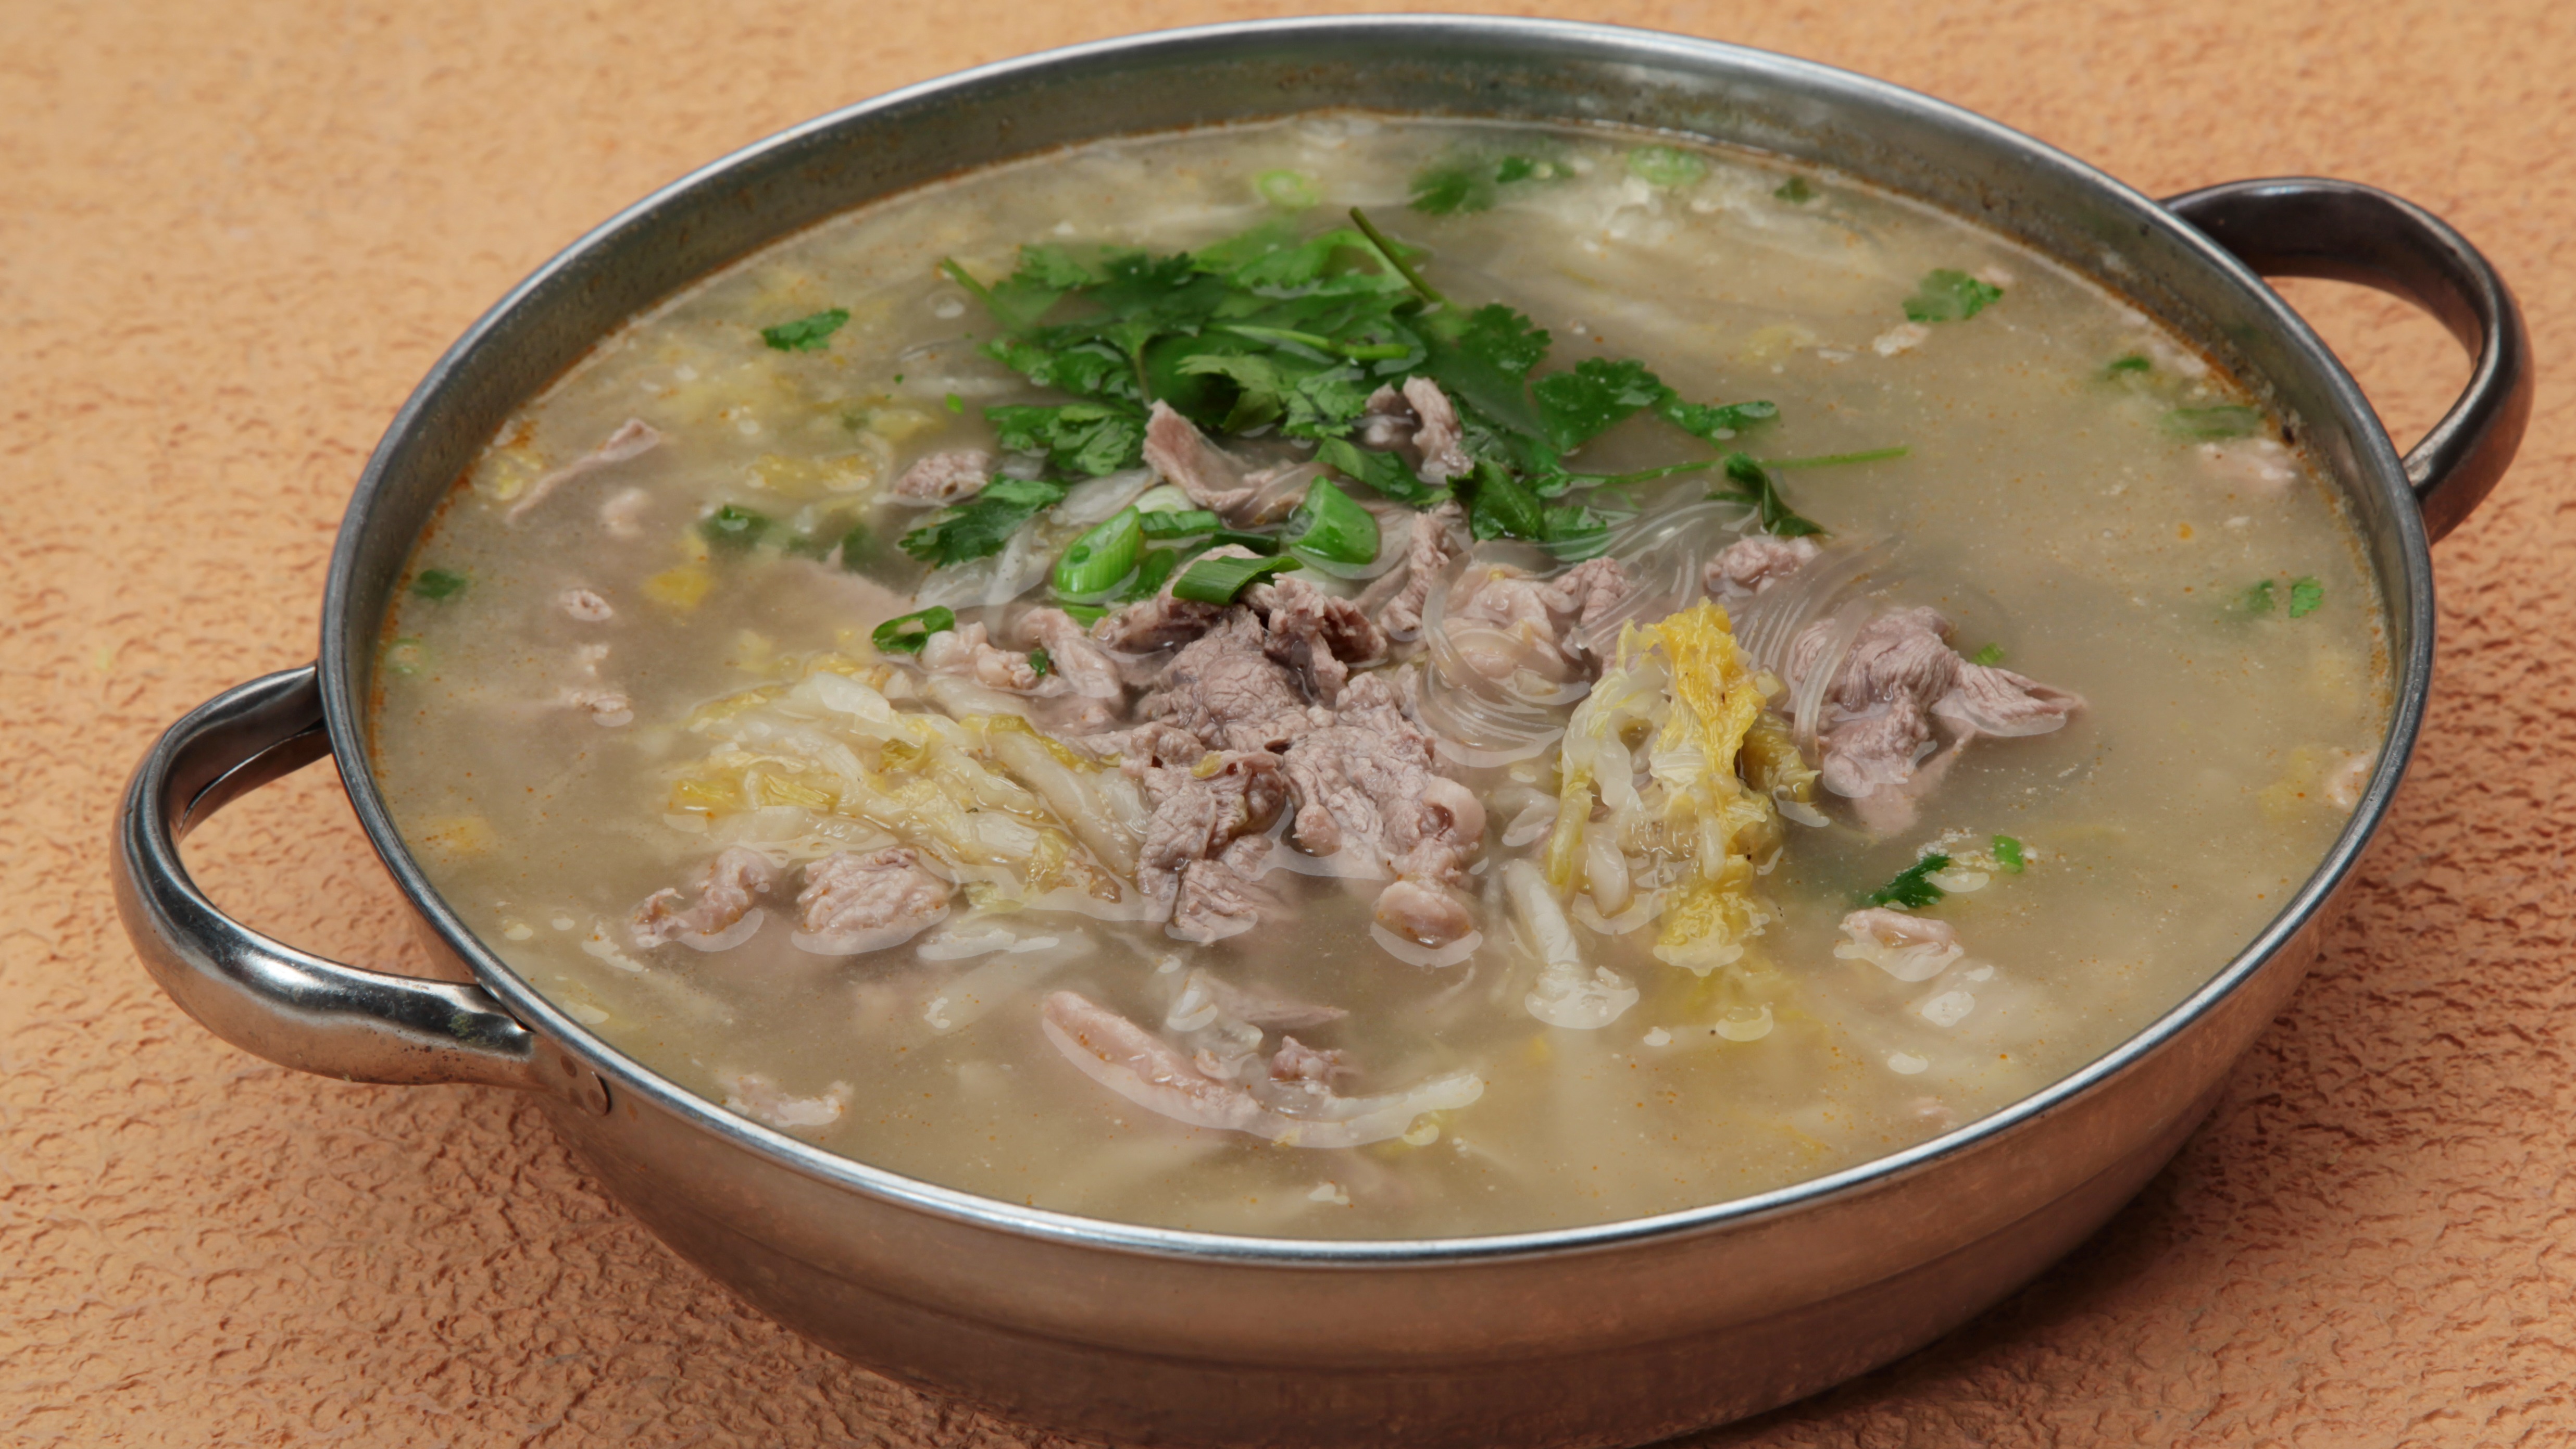 Sour Lamb Soup with Cabbage 酸菜羊肉砂锅